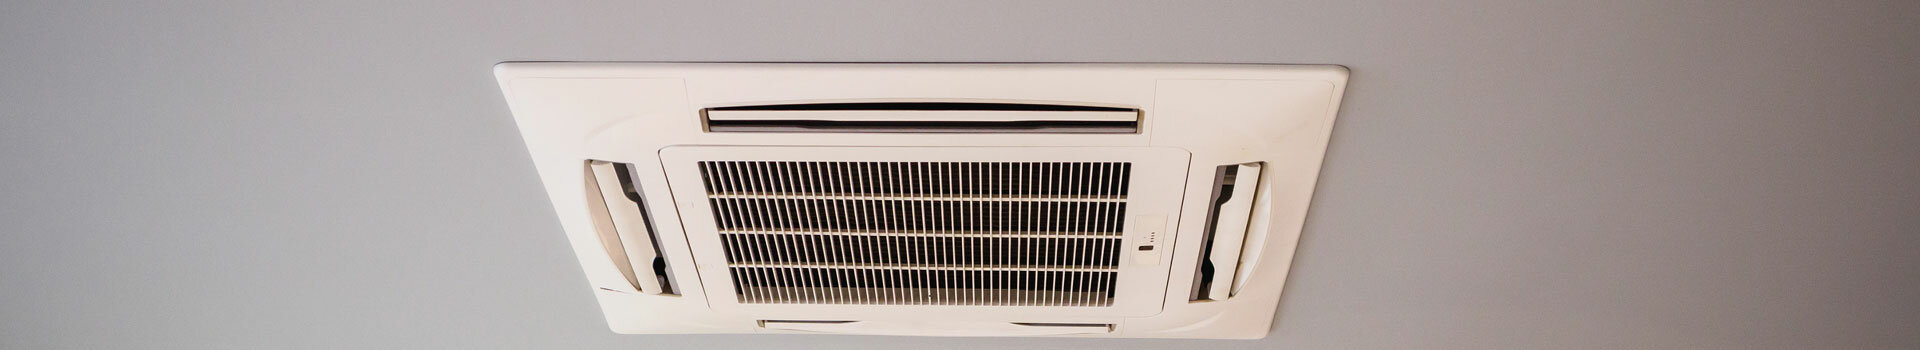 VSE – Installateur de climatisation réversible et de pompe à chaleur